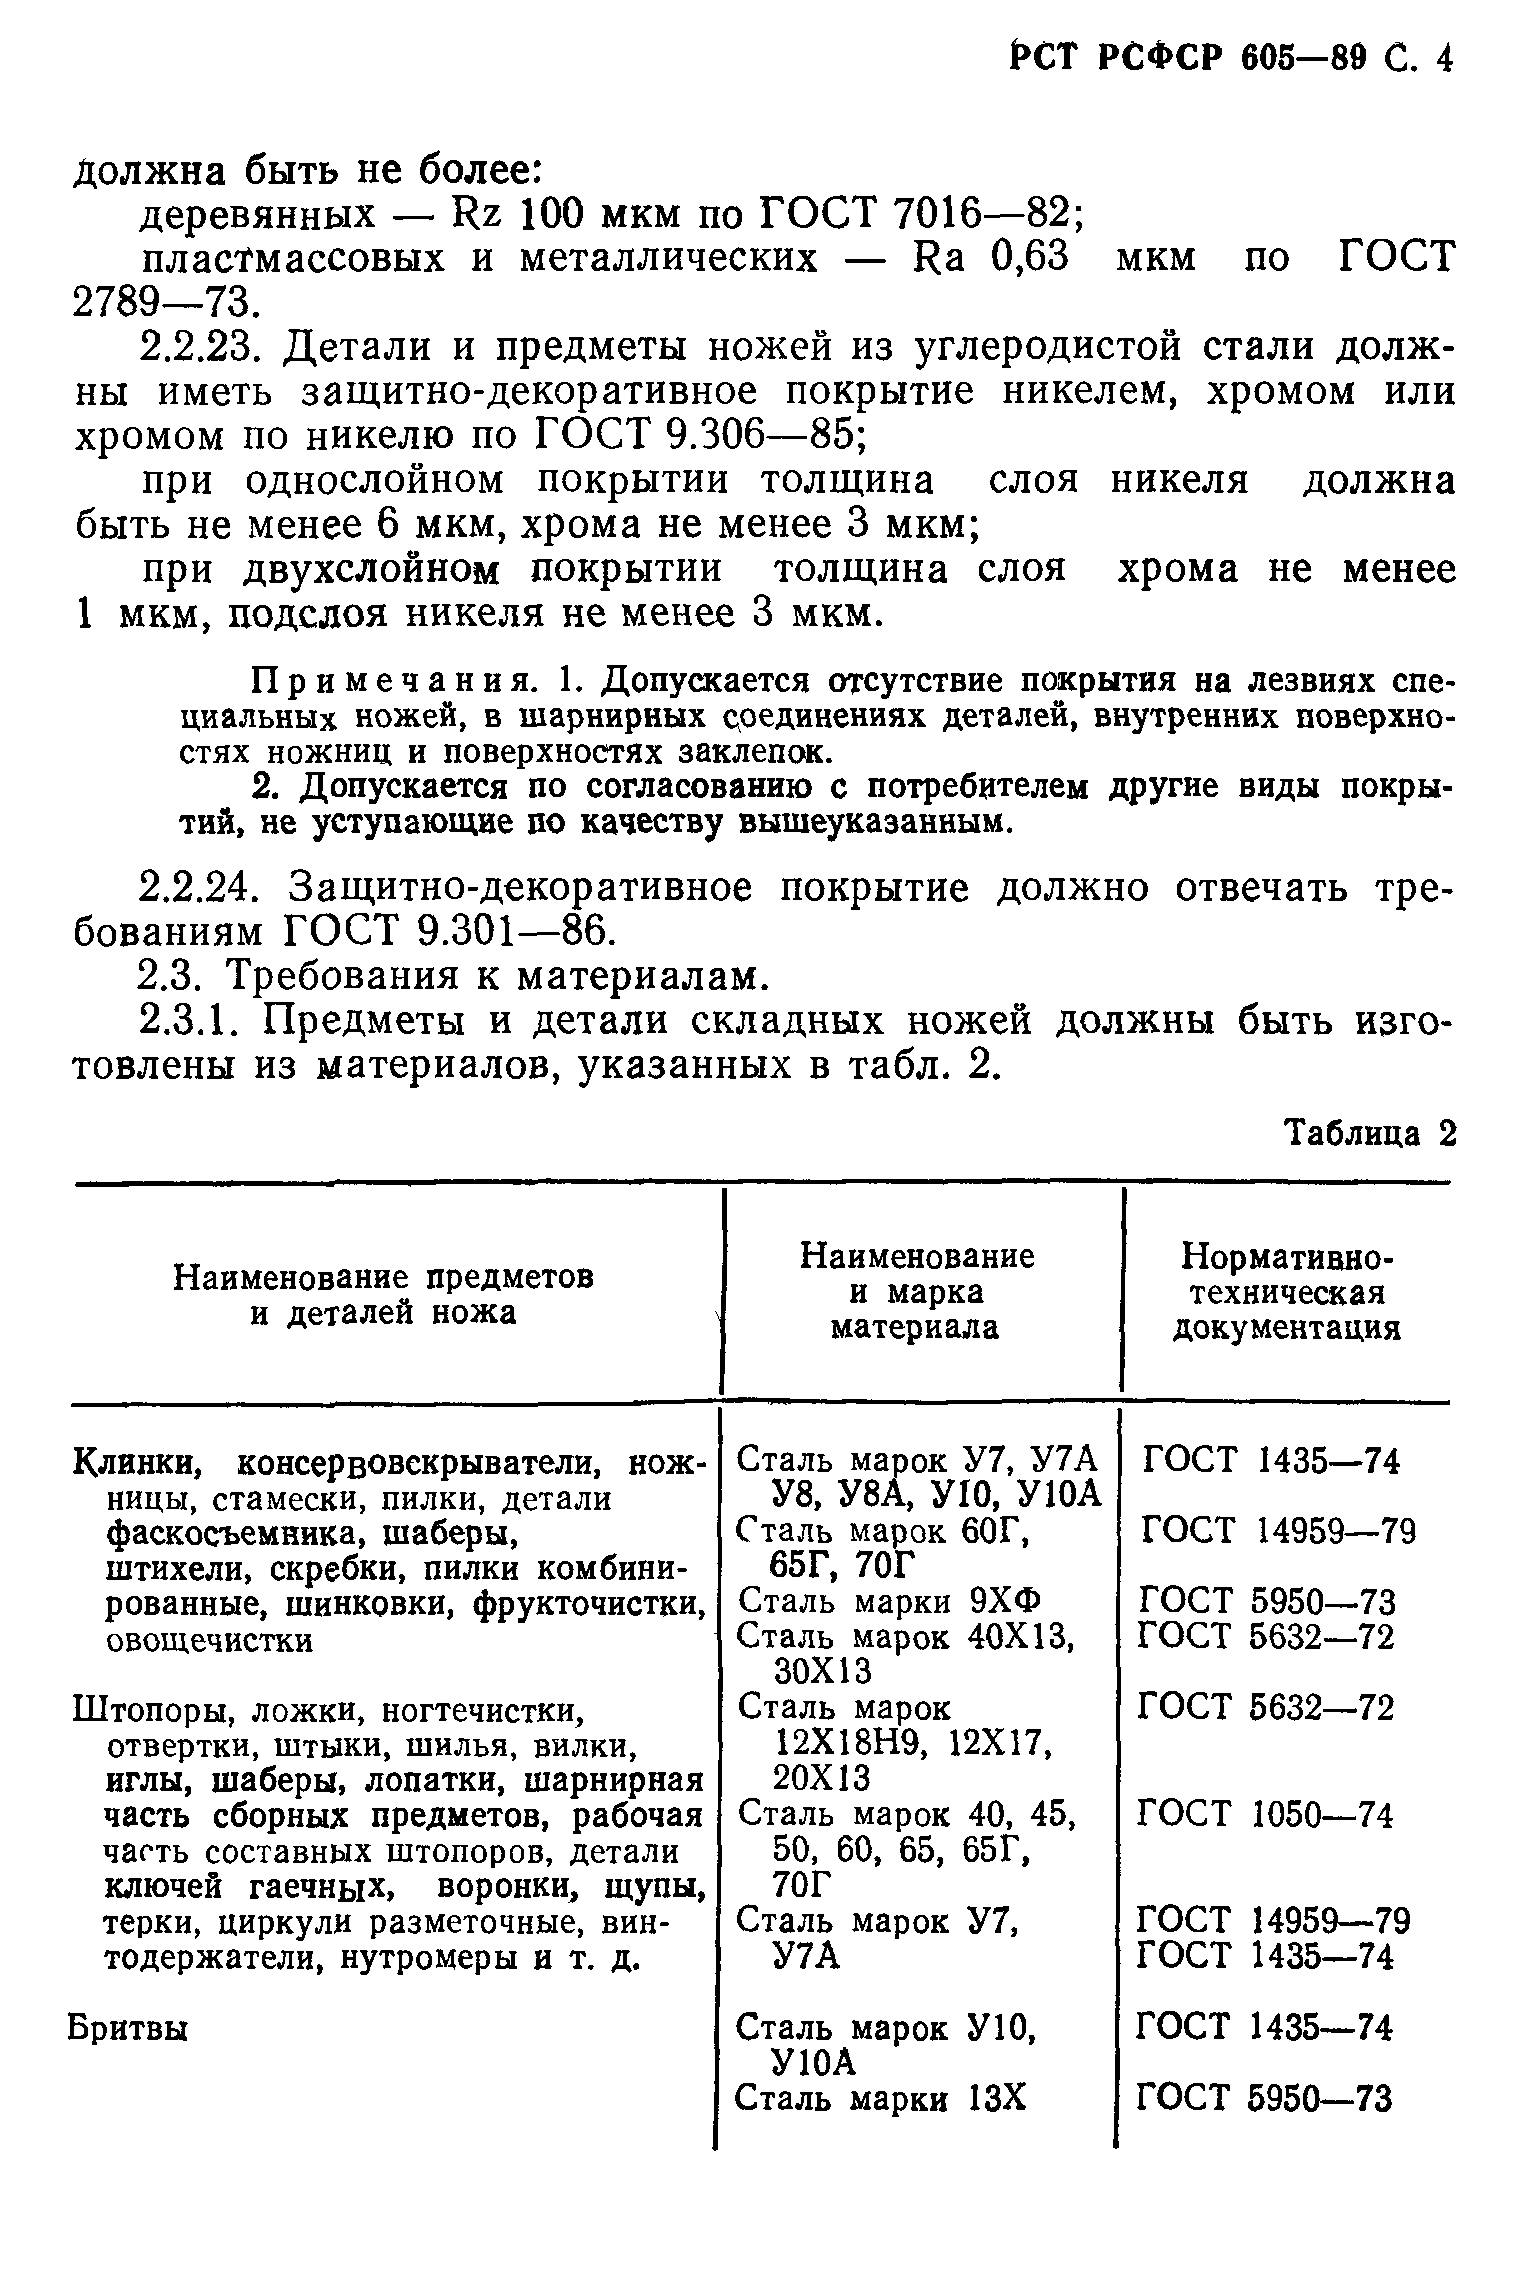 РСТ РСФСР 605-89